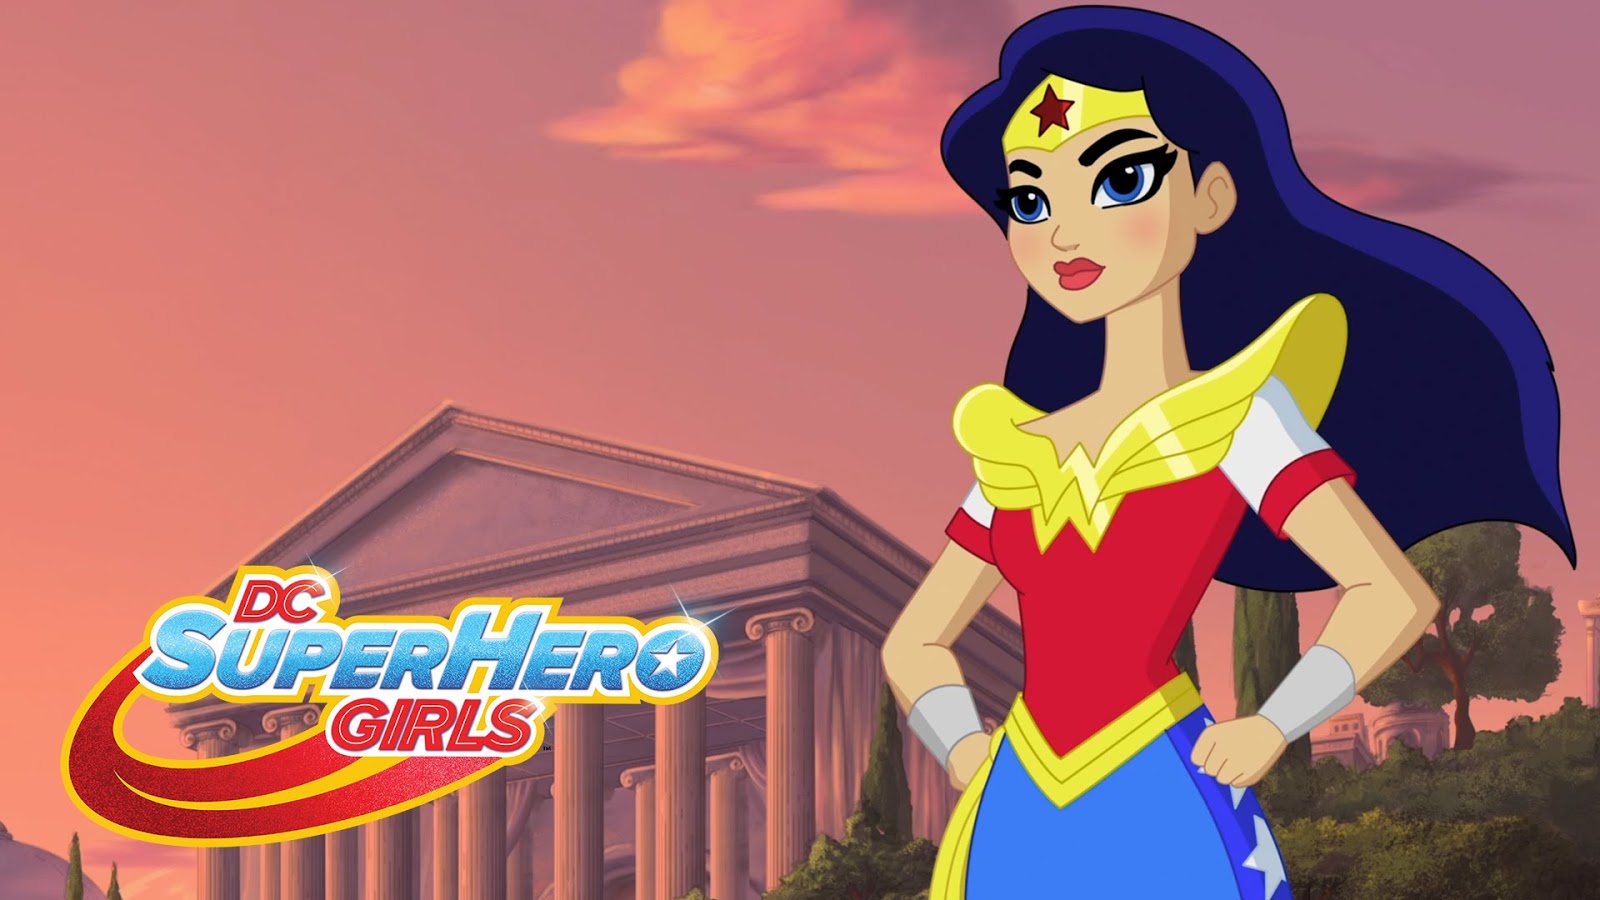 DC Super Hero Girls Hero of the Year